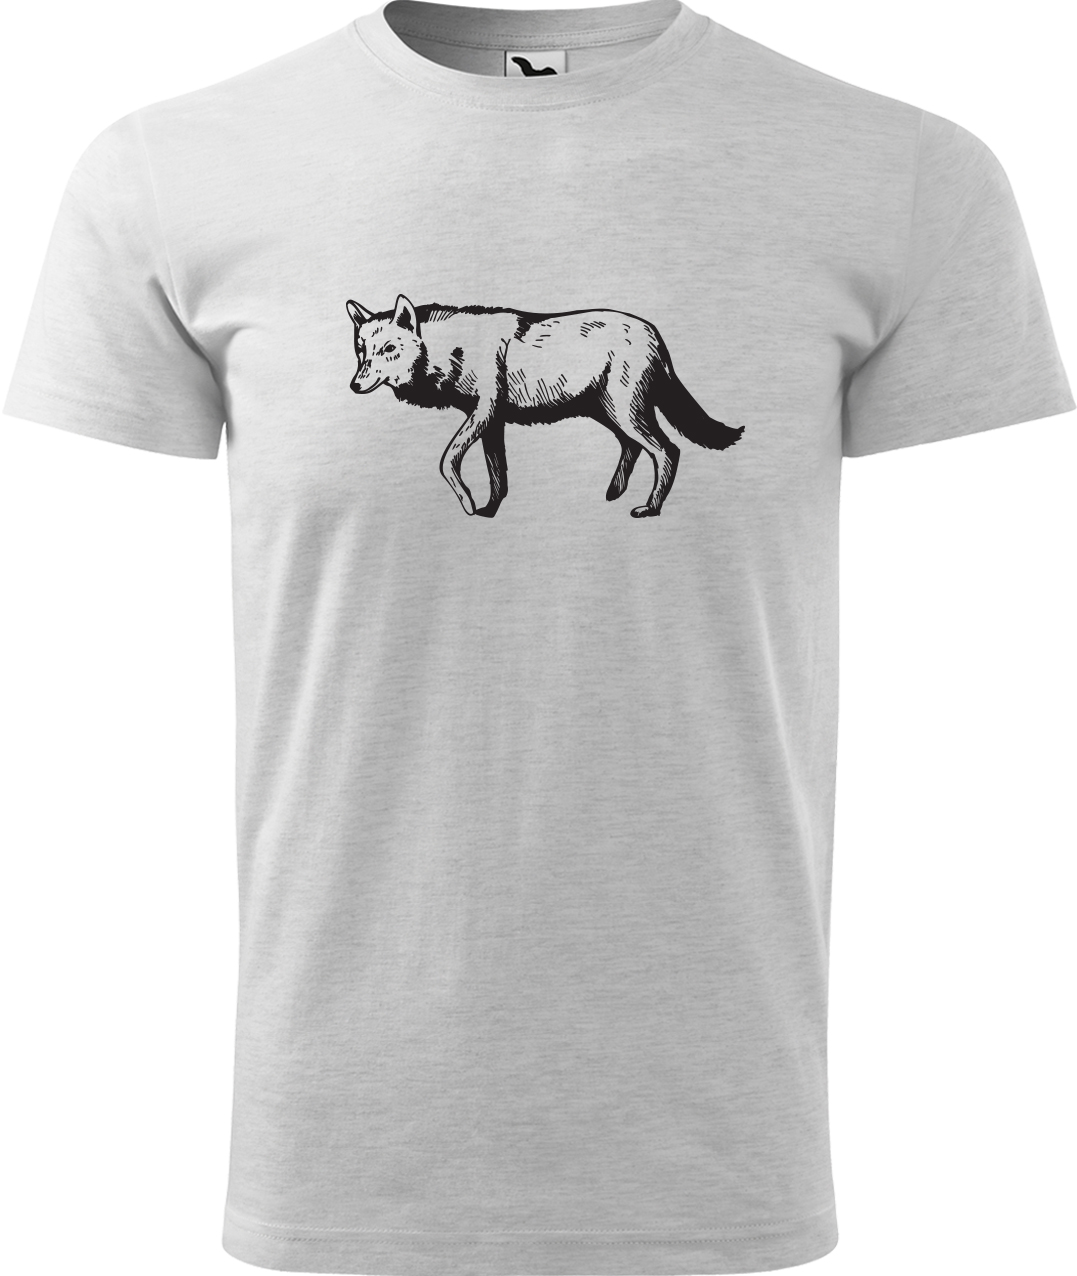 Pánské tričko s vlkem - Vlk Velikost: M, Barva: Světle šedý melír (03), Střih: pánský